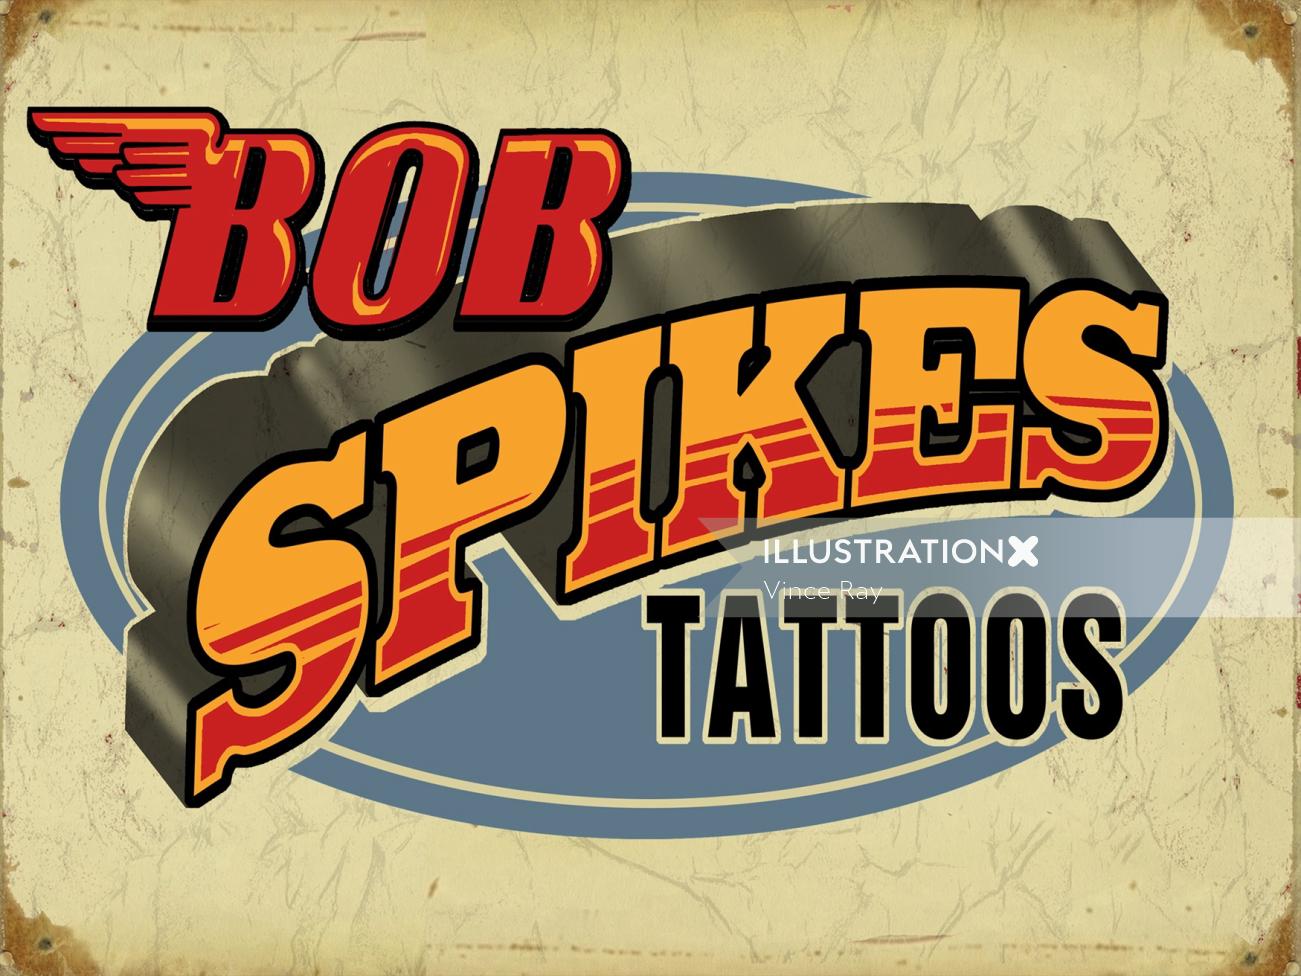 Lettrage à la main des tatouages de Bob Spikes